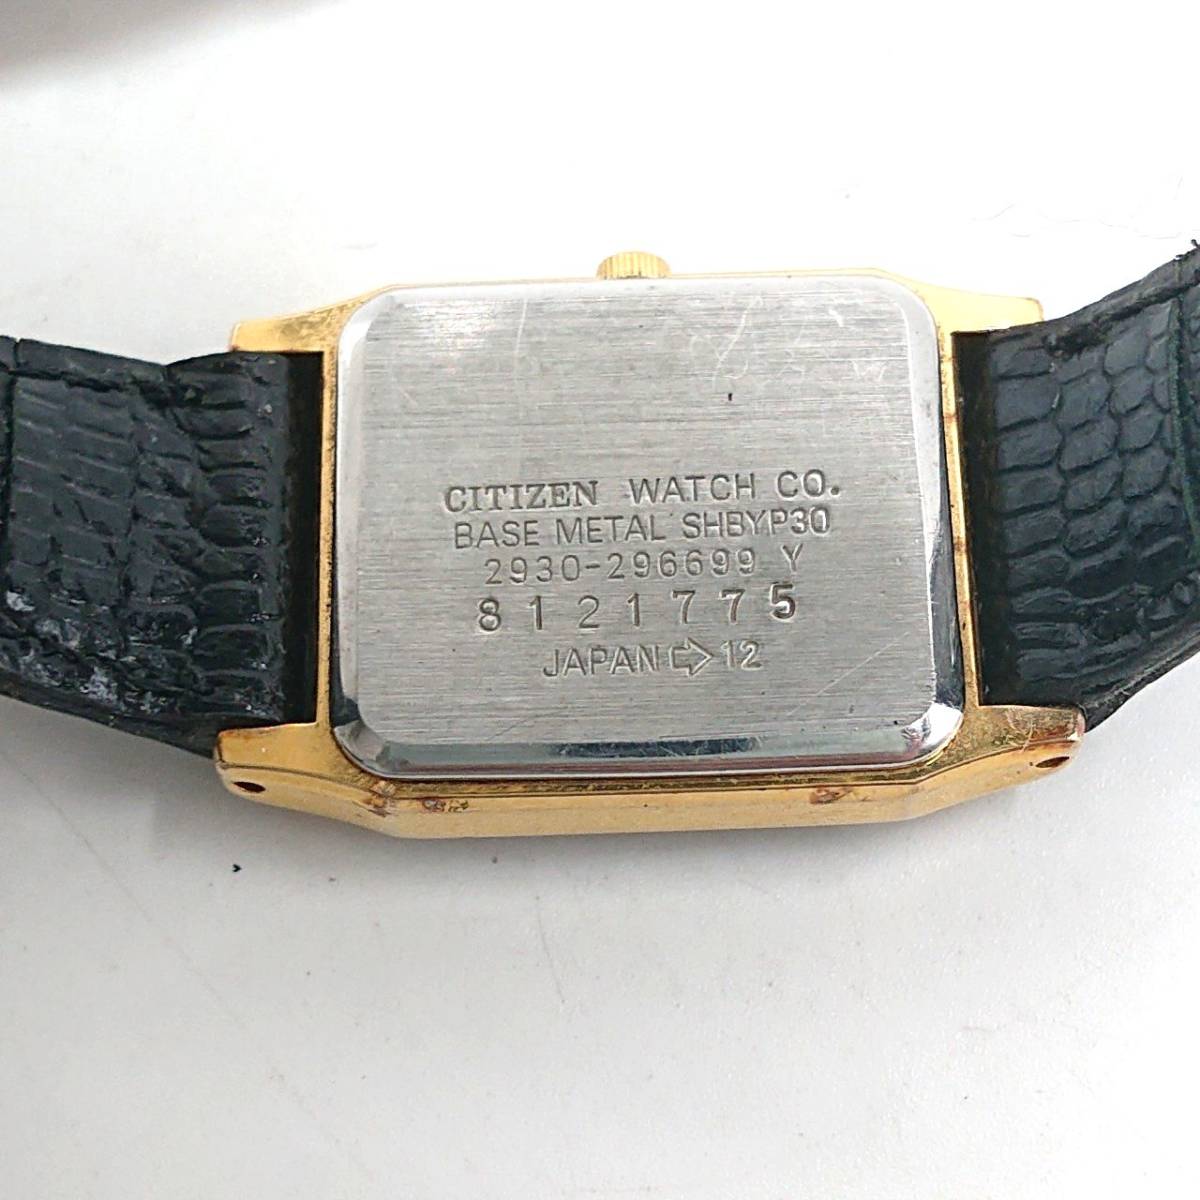 【電池切れ】CITIZEN シチズン EXCEED エクシード クォーツ 腕時計 黒文字盤 レザーベルト レディース 2930-296699_画像2